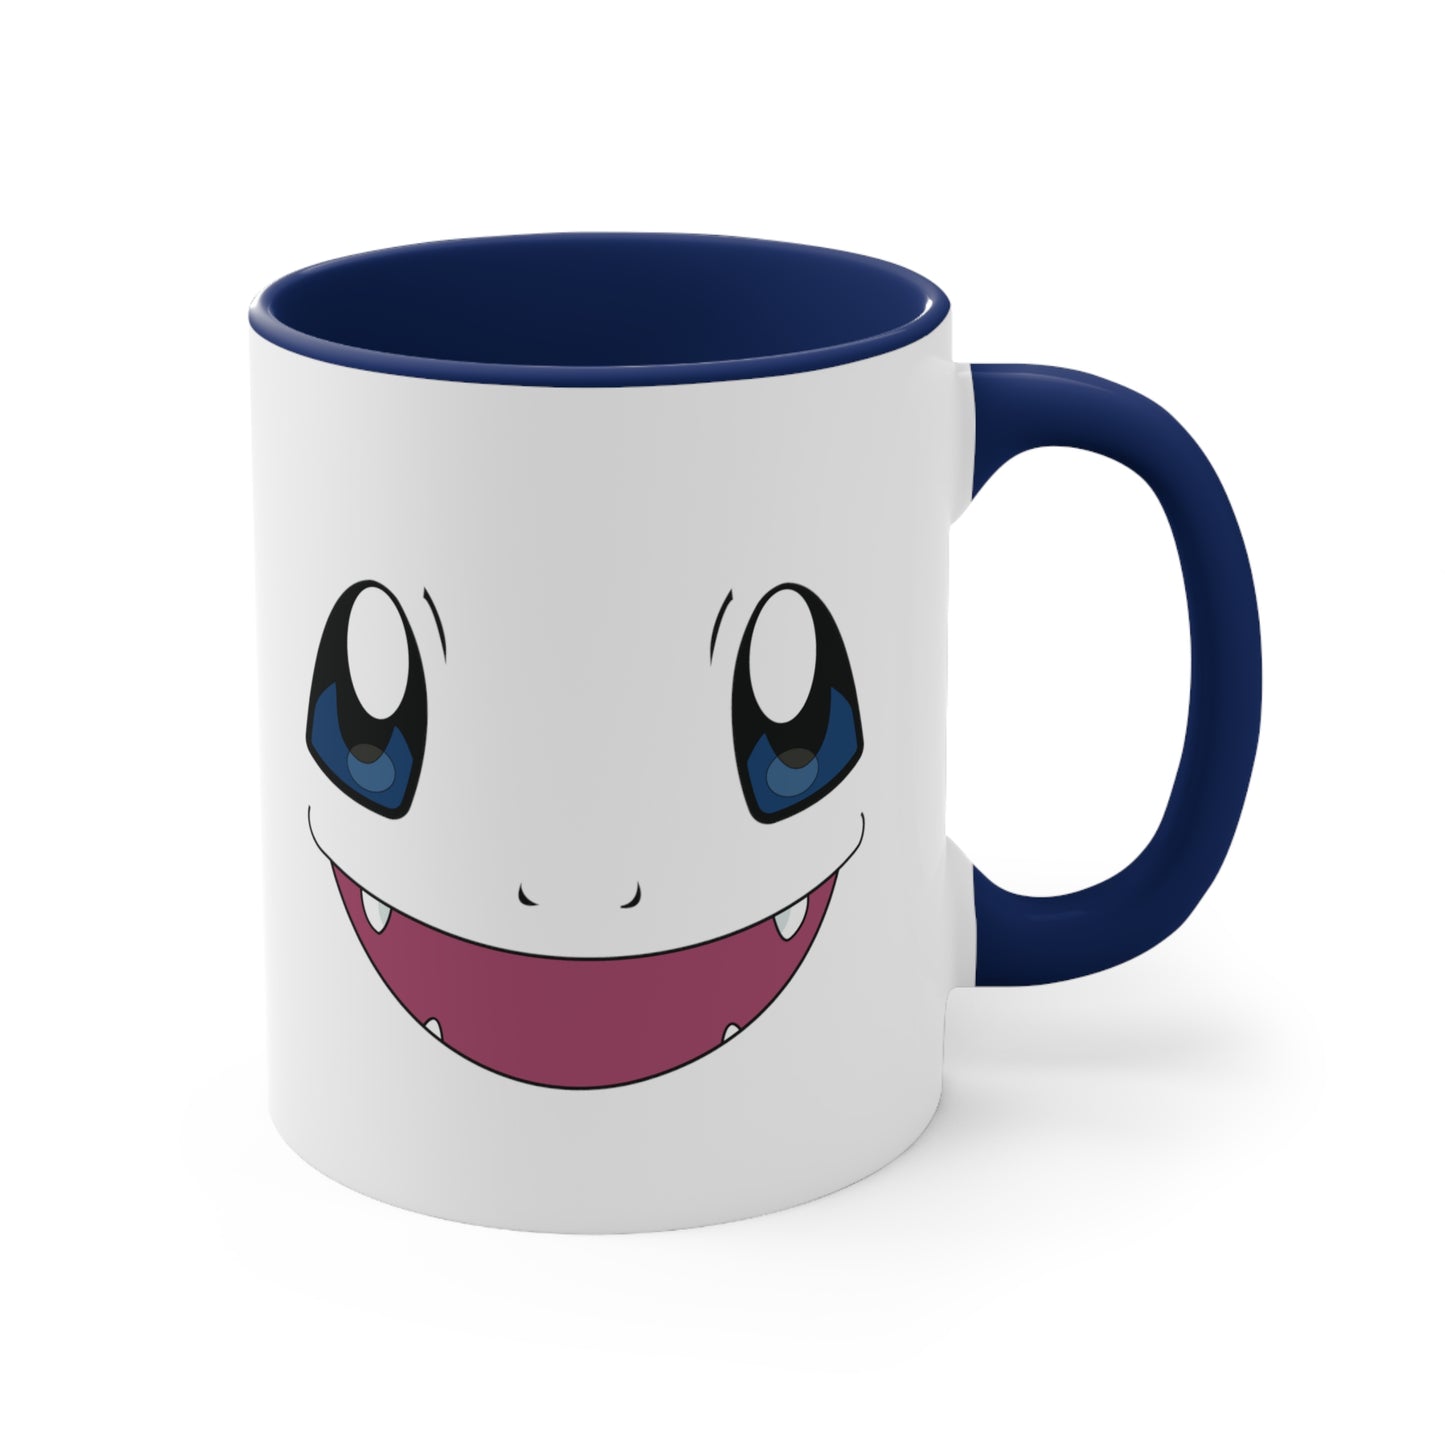 charmander, pokemon, charmander mug, anime merchandise, charmander art, anime mug, anime merchandise, pokemon merch, charmander merch, pokemon mug